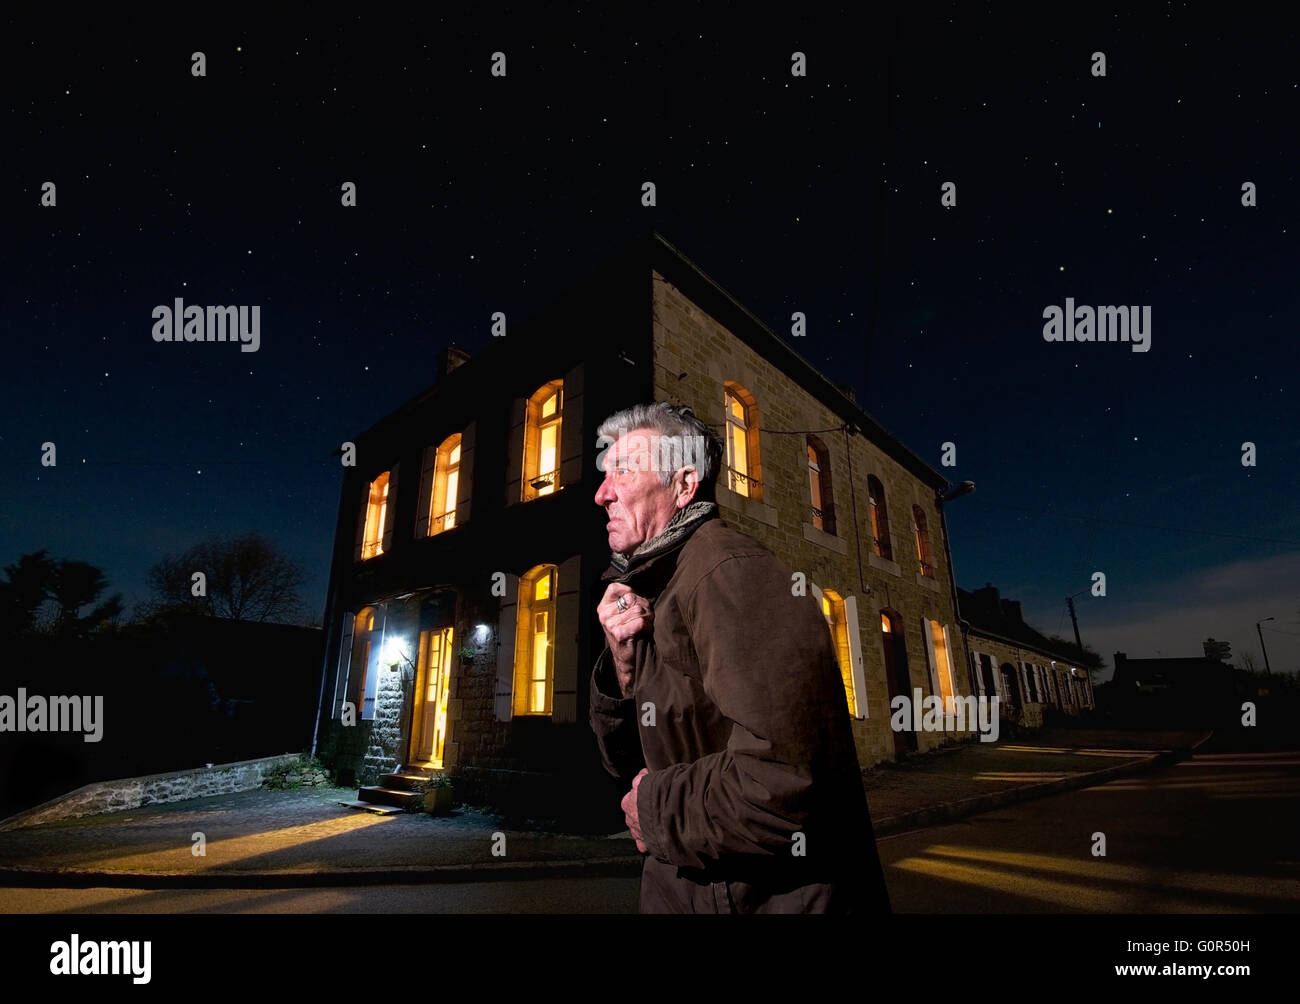 Grumpy Old man dans une rue par une froide nuit d'hiver Banque D'Images